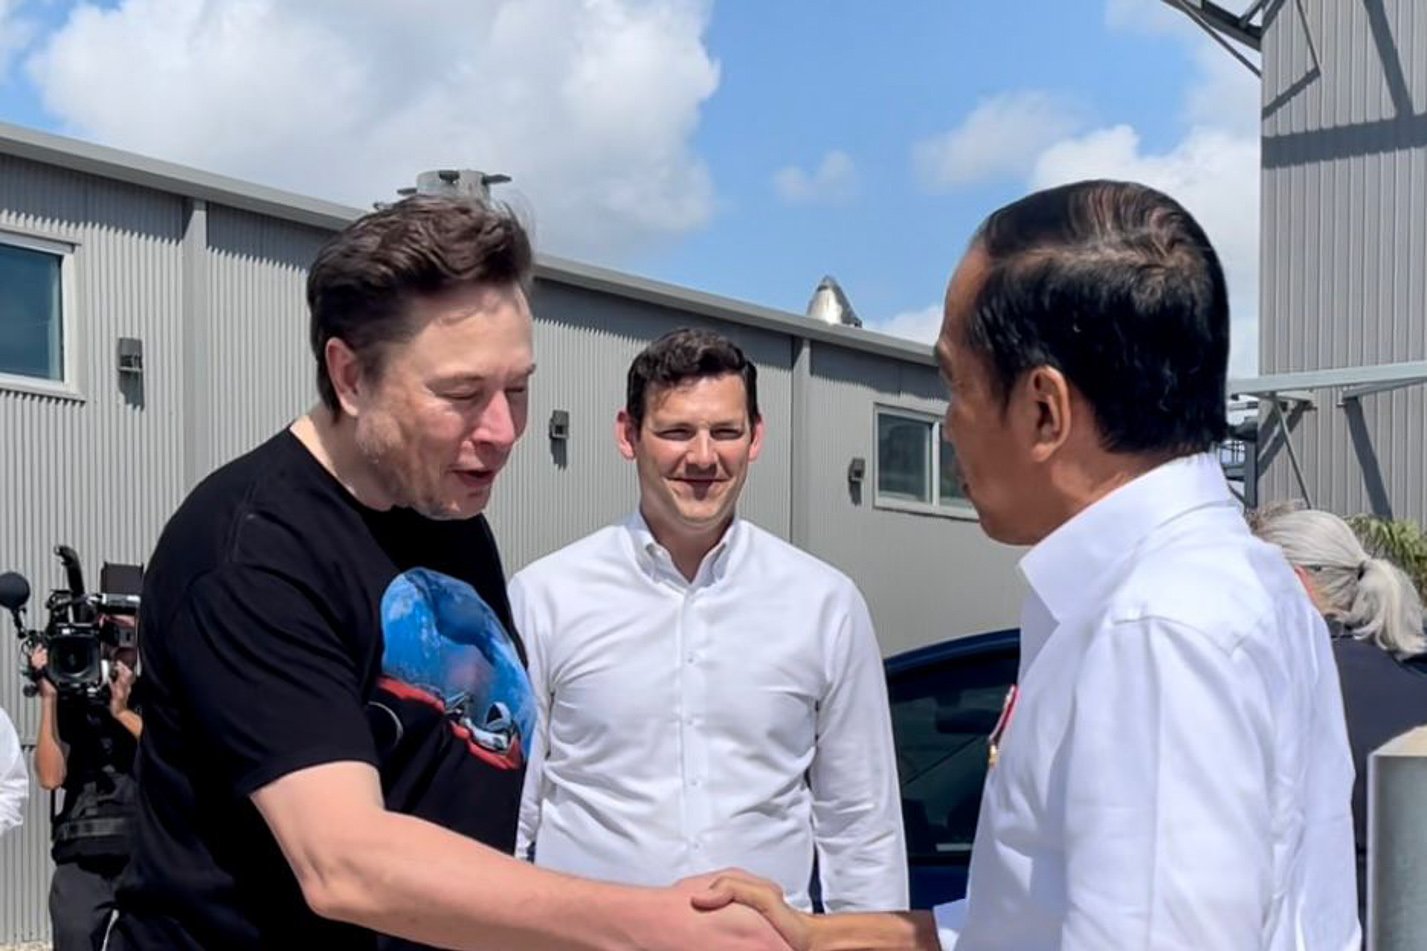 Presiden Joko Widodo berjabat tangan dengan Elon Musk di Gedung Stargate Space X, Boca Chica, Amerika Serikat, Sabtu (14/05/2022). Dalam kunjungannya ke Space X di Boca Chica, AS, Presiden Jokowi mengundang Elon Musk untuk datang ke Indonesia. Menjawab undangan tersebut, Elon Musk mengatakan berencana datang ke Indonesia pada bulan November tahun ini.